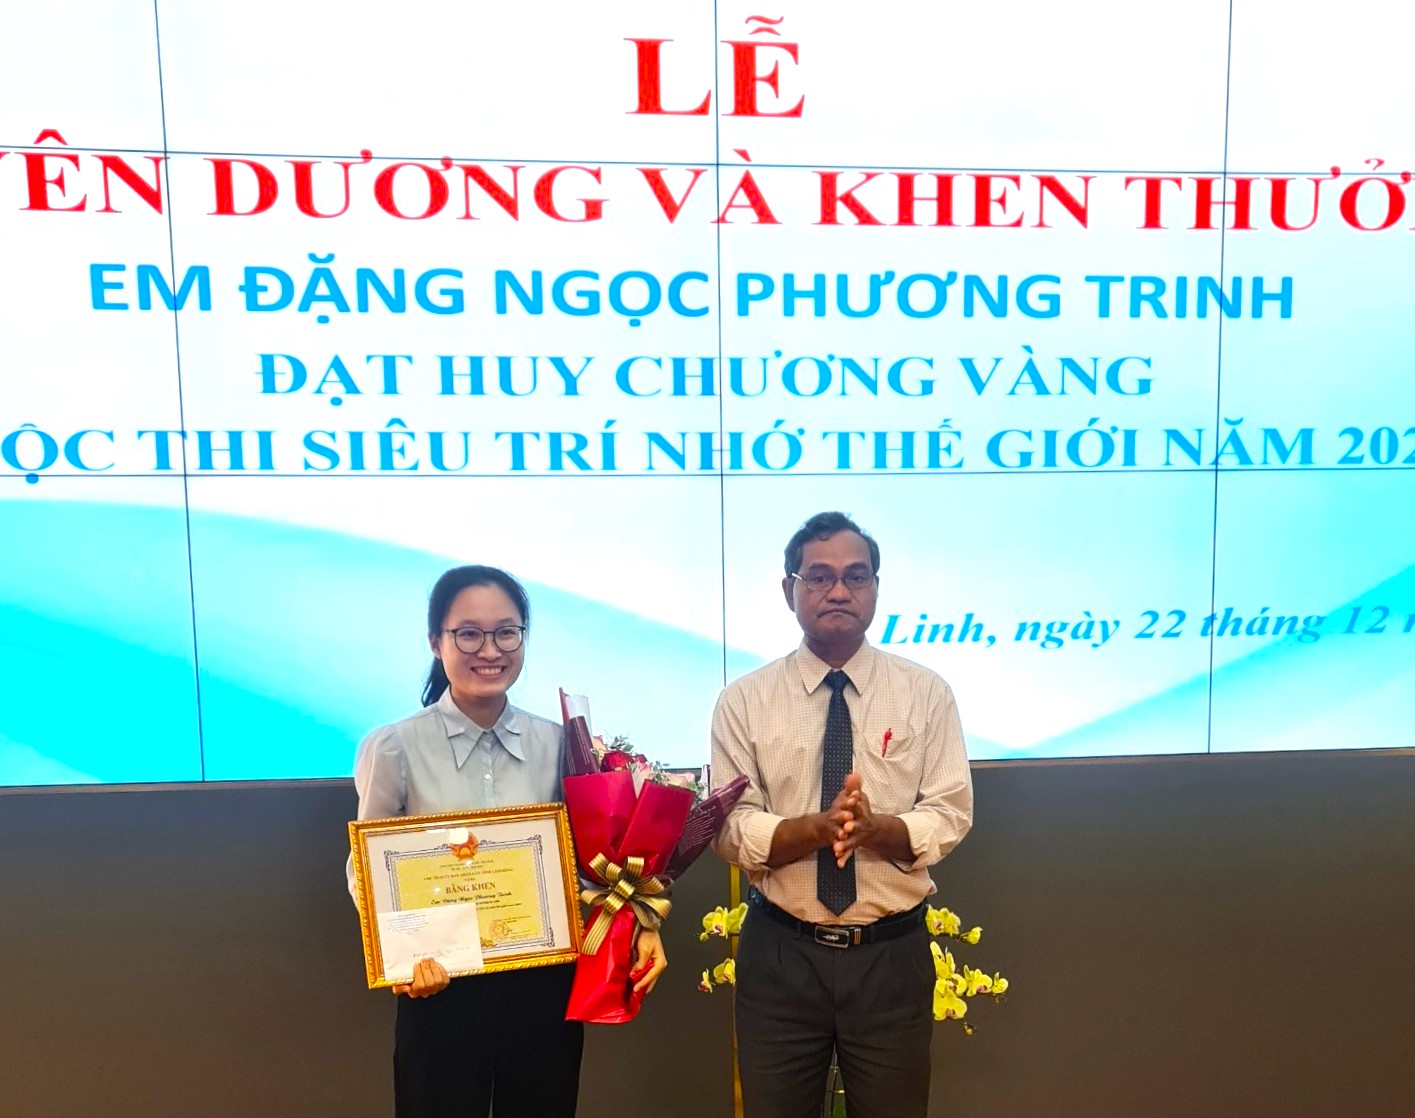 Nhà vô địch Siêu trí nhớ thế giới Đặng Ngọc Phương Trinh nhận Bằng khen của Chủ tịch UBND tỉnh Lâm Đồng